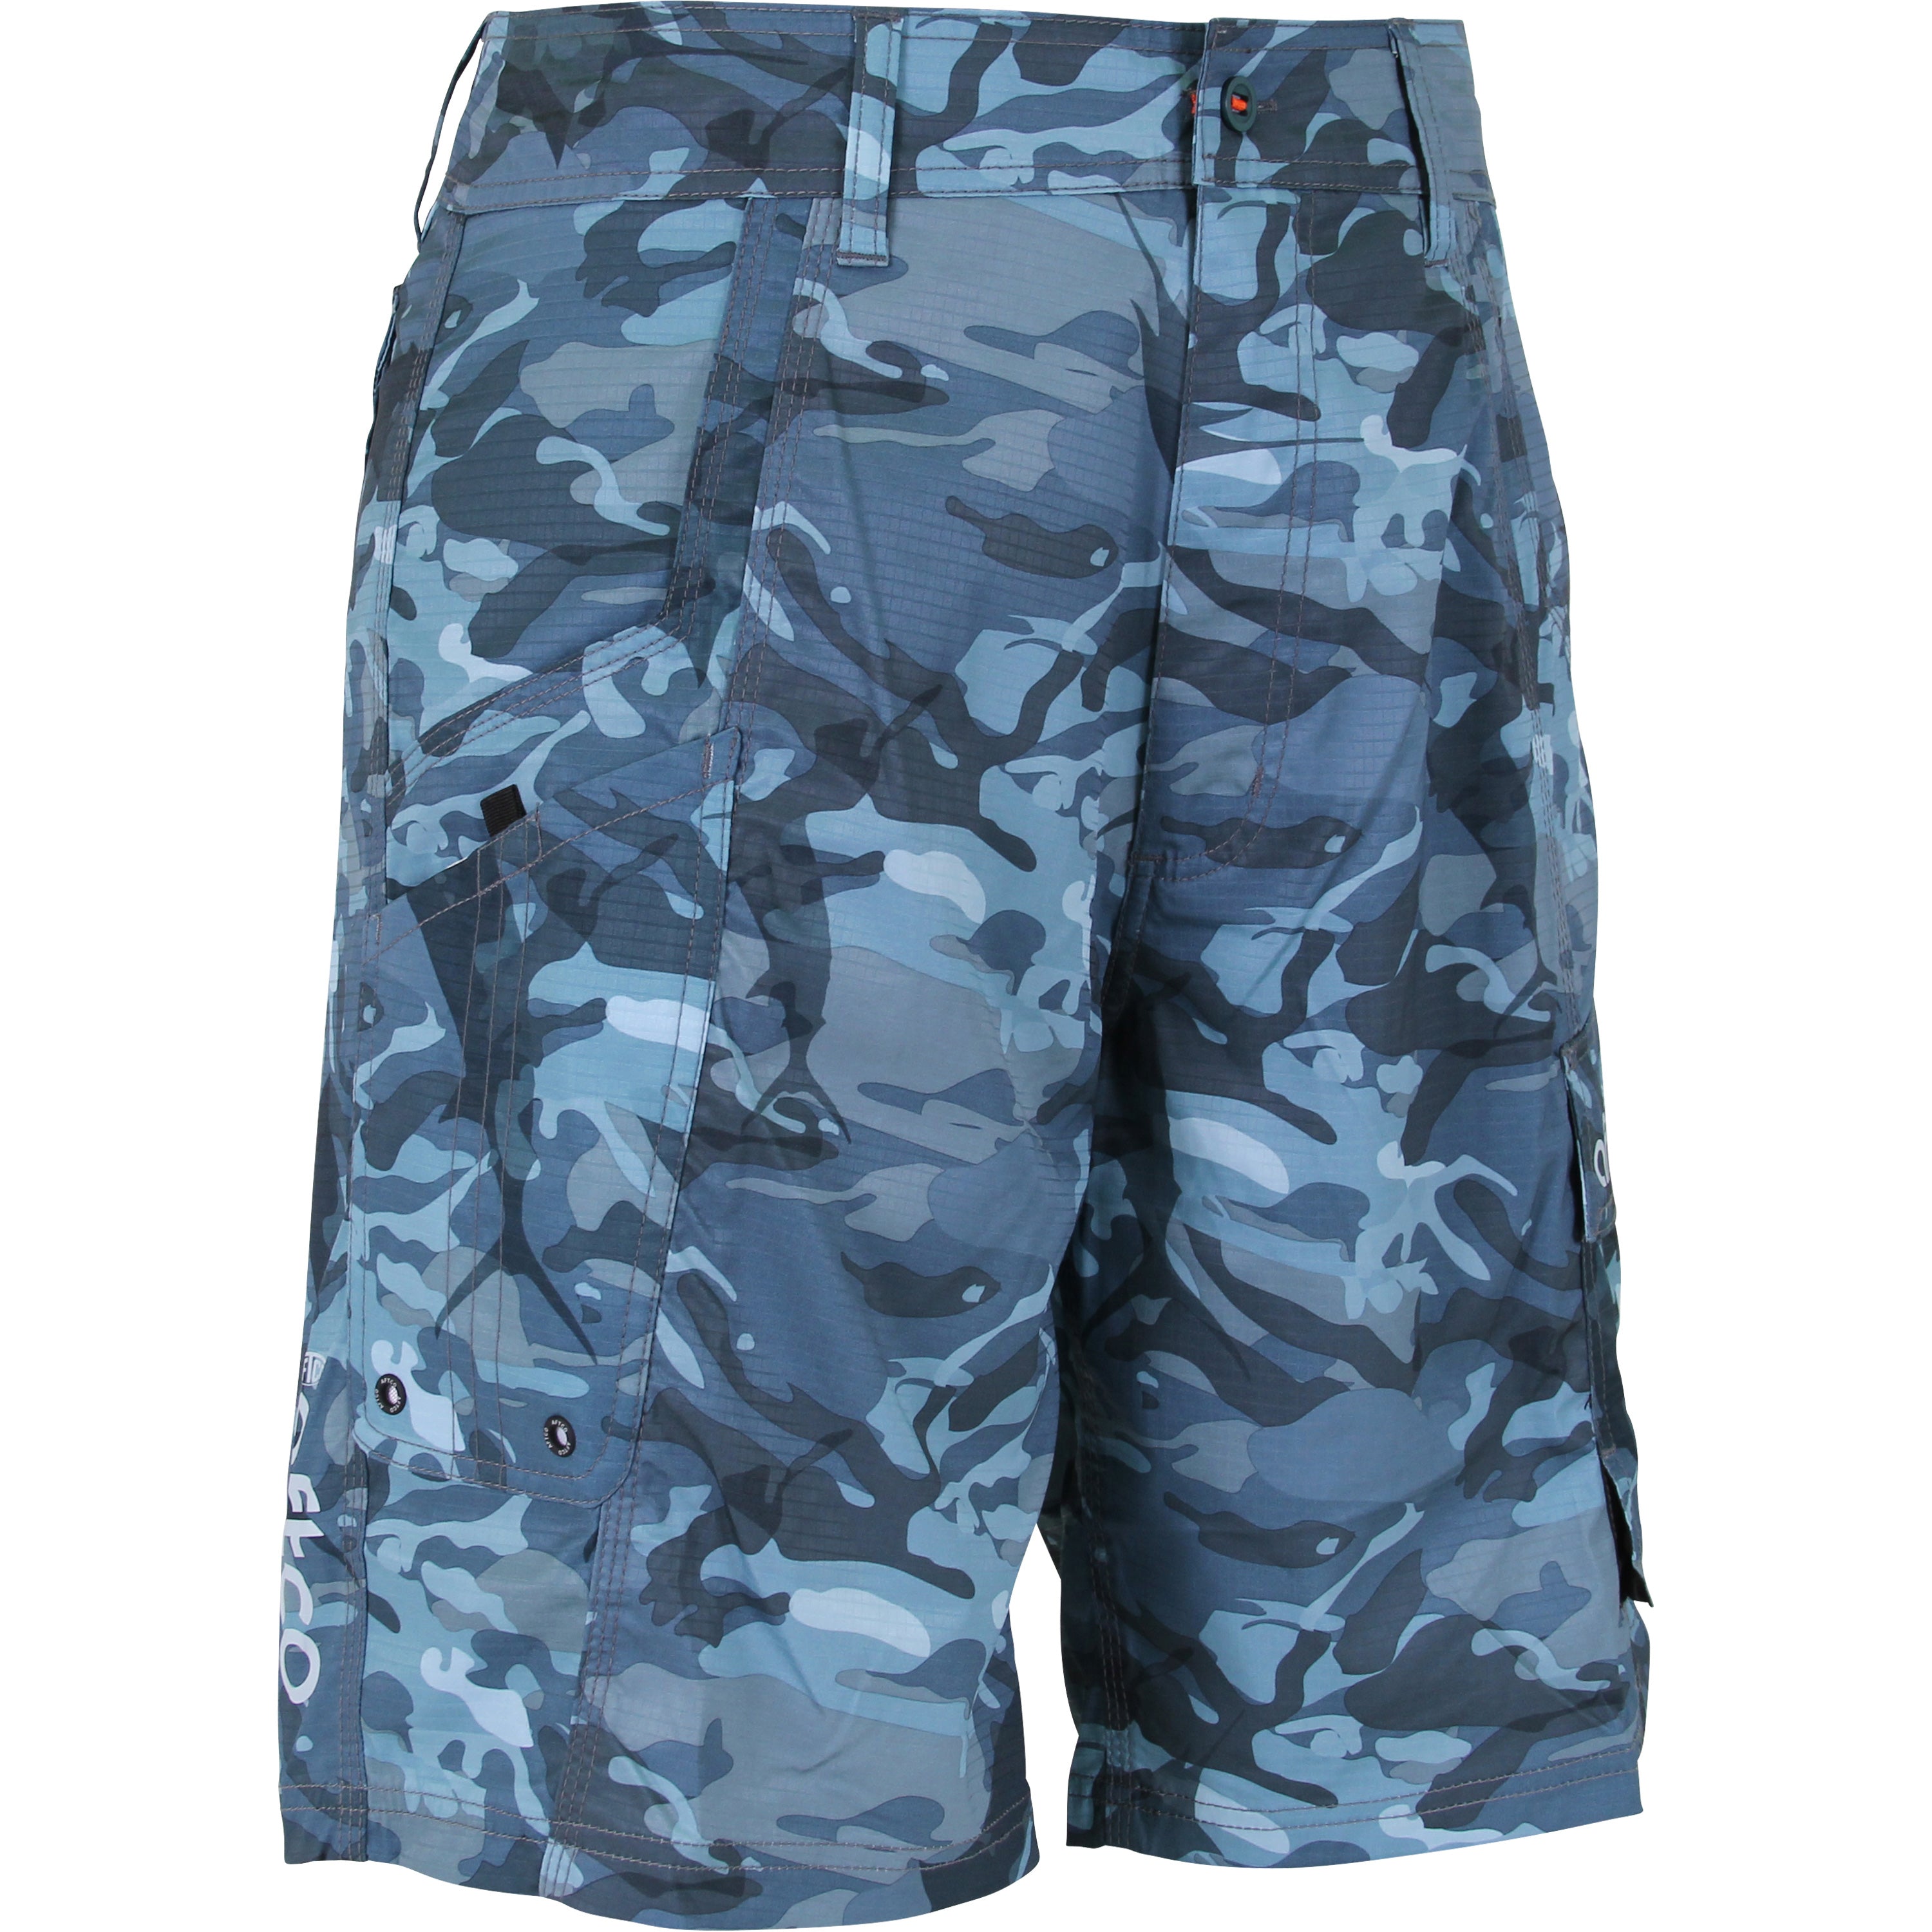 AFTCO Men's Tactical Fishing Shorts